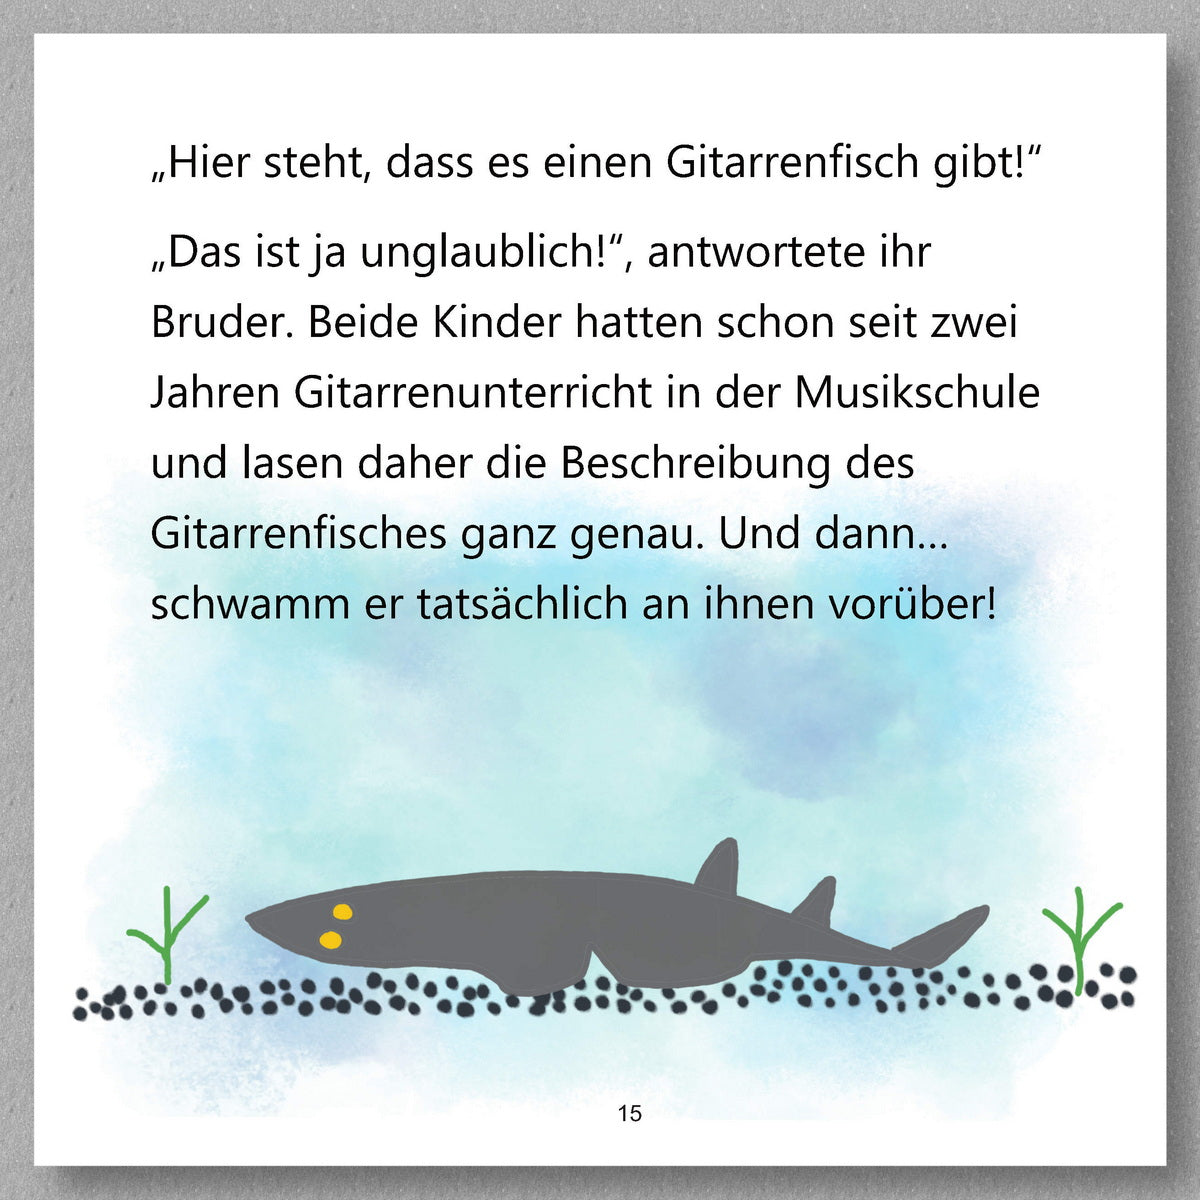 Der Gitarrenfisch by Petra Schwarzl - preview of the text